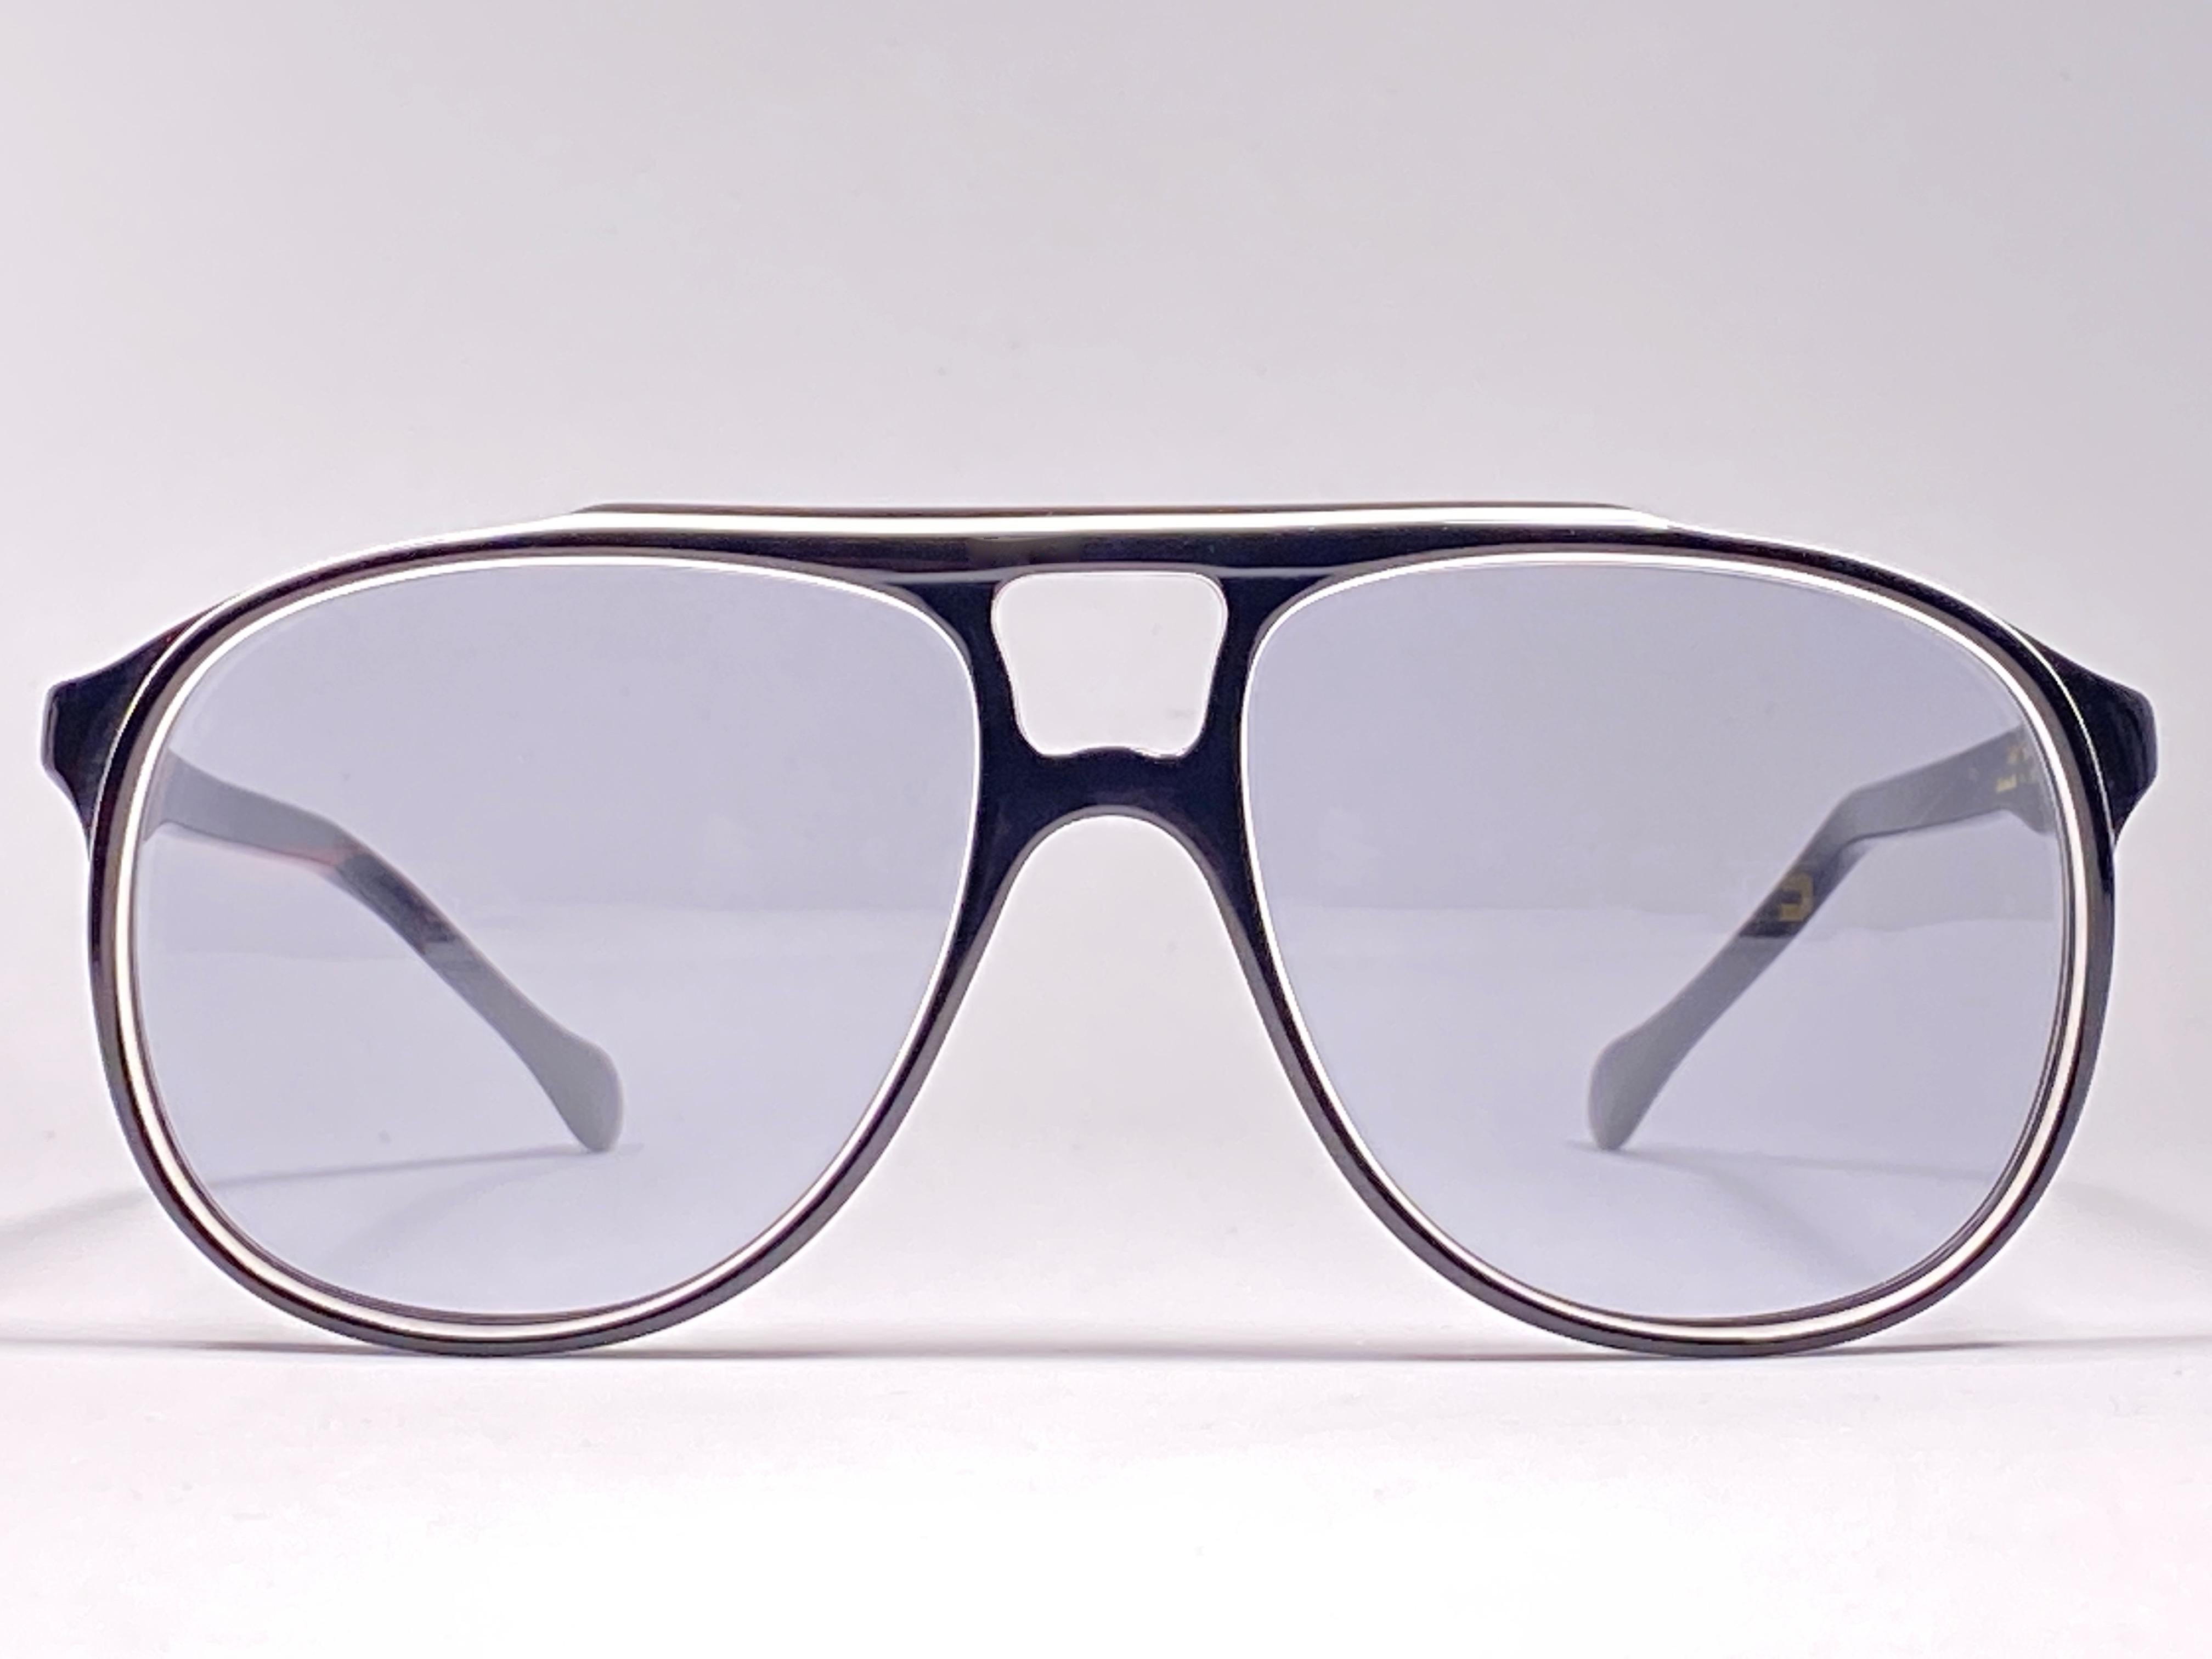 Burgundfarbene Sonnenbrille von Oliver Goldsmith.  

Übergroßer schwarzer Rahmen mit einem Paar mittelgrauer Gläser.   

 Dieses Paar hat geringe Abnutzungserscheinungen durch die Lagerung.

Handgefertigt in England.


MASSNAHMEN

FRONT : 13